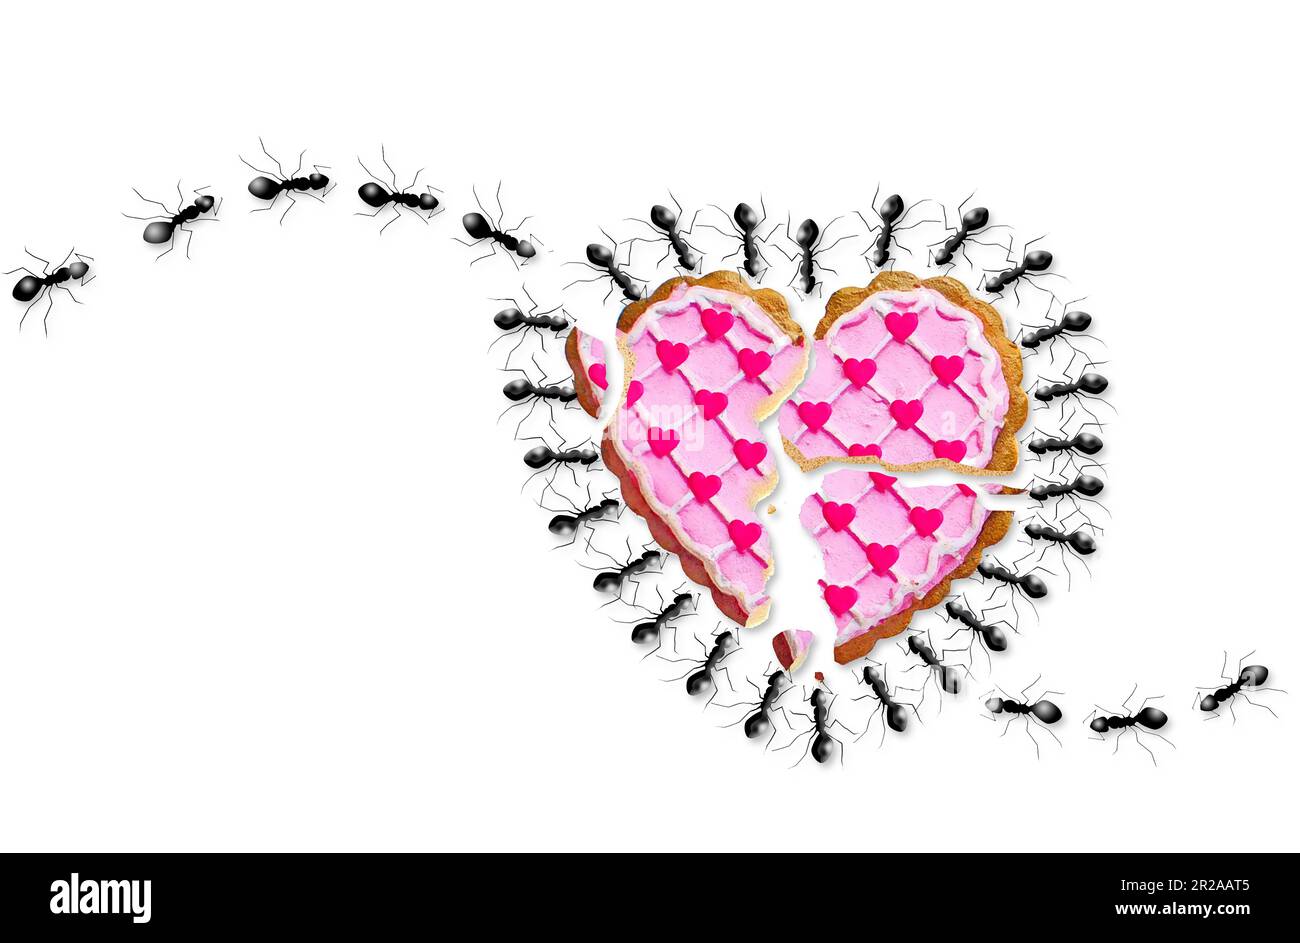 En nettoyant un cœur brisé, les fourmis marchent pour faire le travail. Un biscuit cassé en forme de coeur est sur le sol et une colonie de fourmis est là pour le nettoyer Banque D'Images